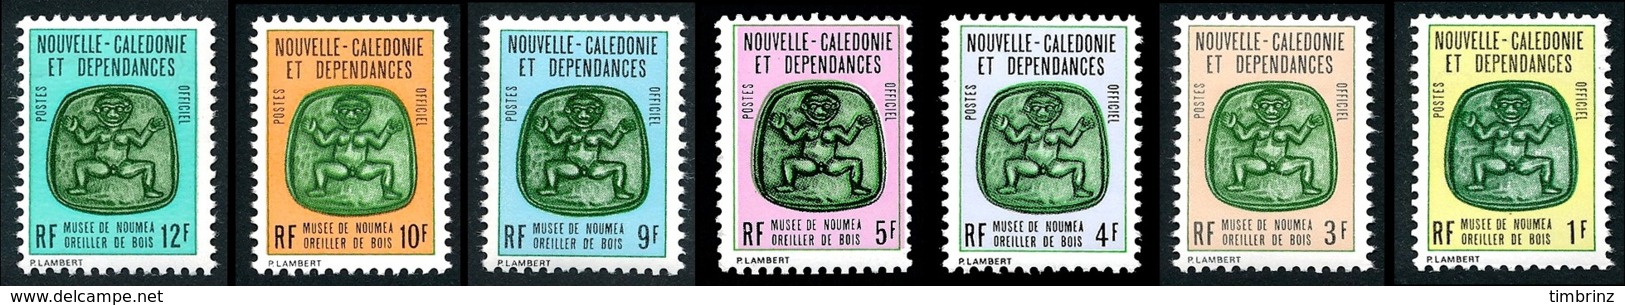 NOUV.-CALEDONIE 1973 - Yv. Service 14 à 20 **   Cote= 8,00 EUR - Musée Nouméa. Oreiller Bois (7 Val)  ..Réf.NCE25001 - Officials